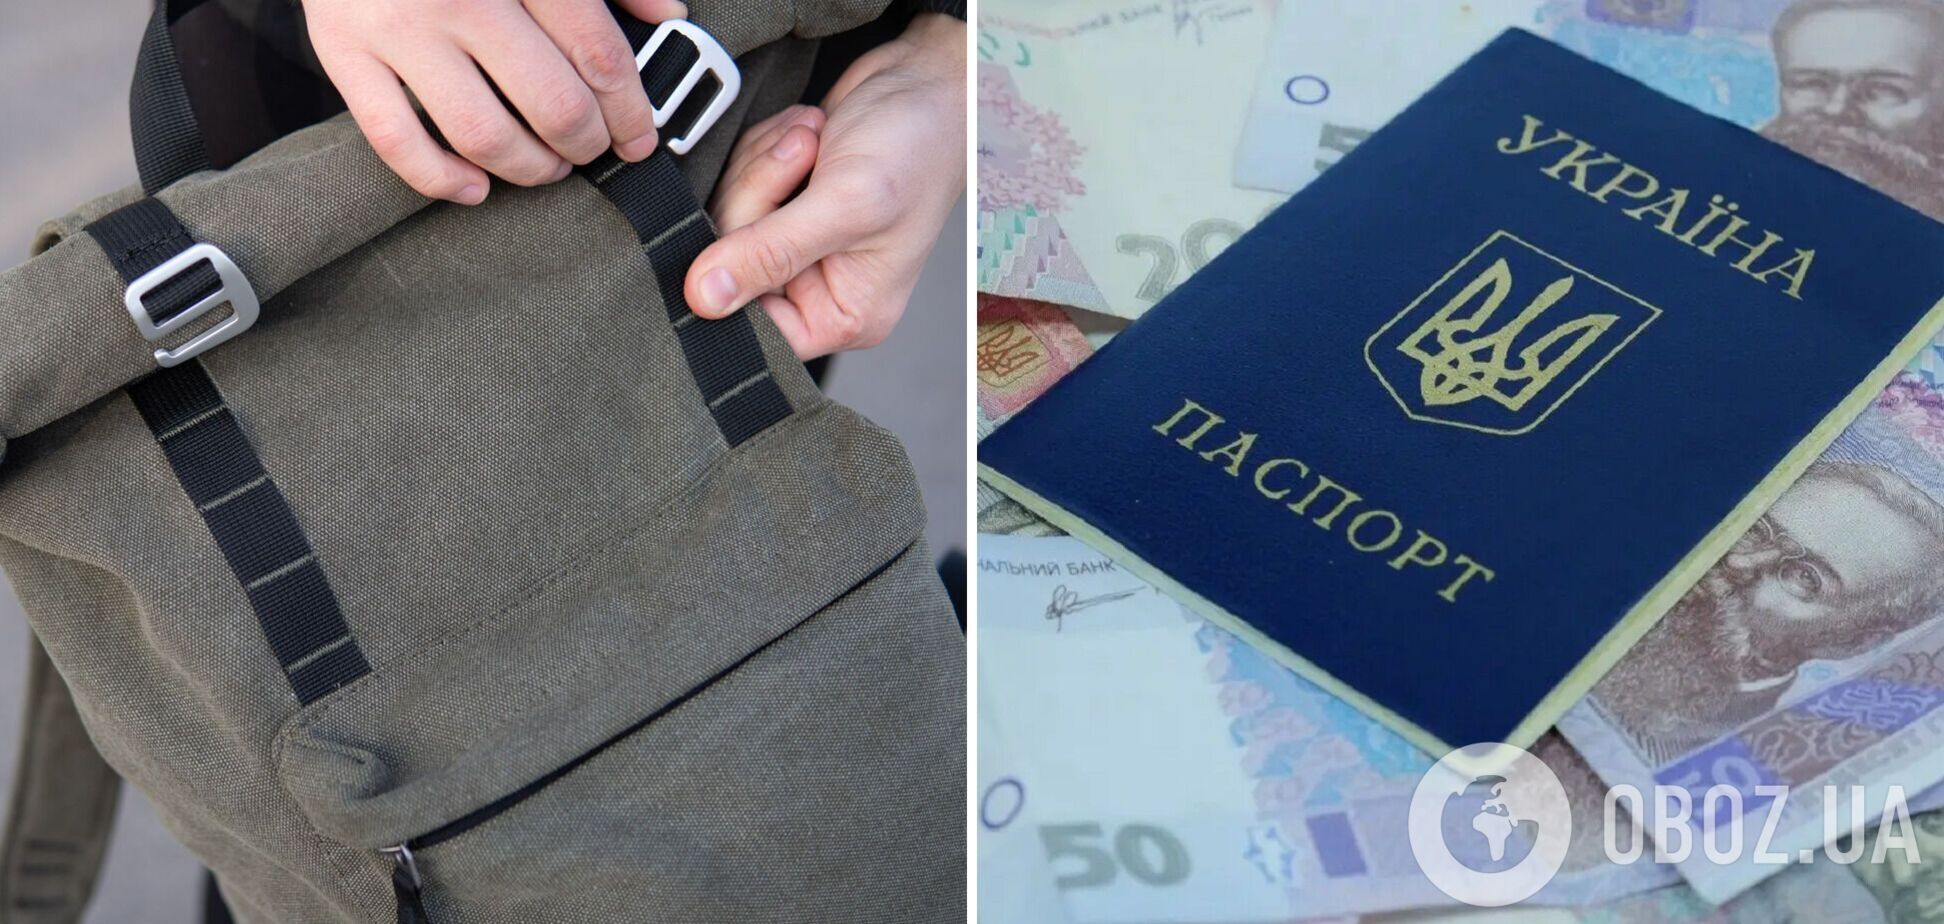 Тривожну валізку в Росії порадили збирати з українською валютою та документами